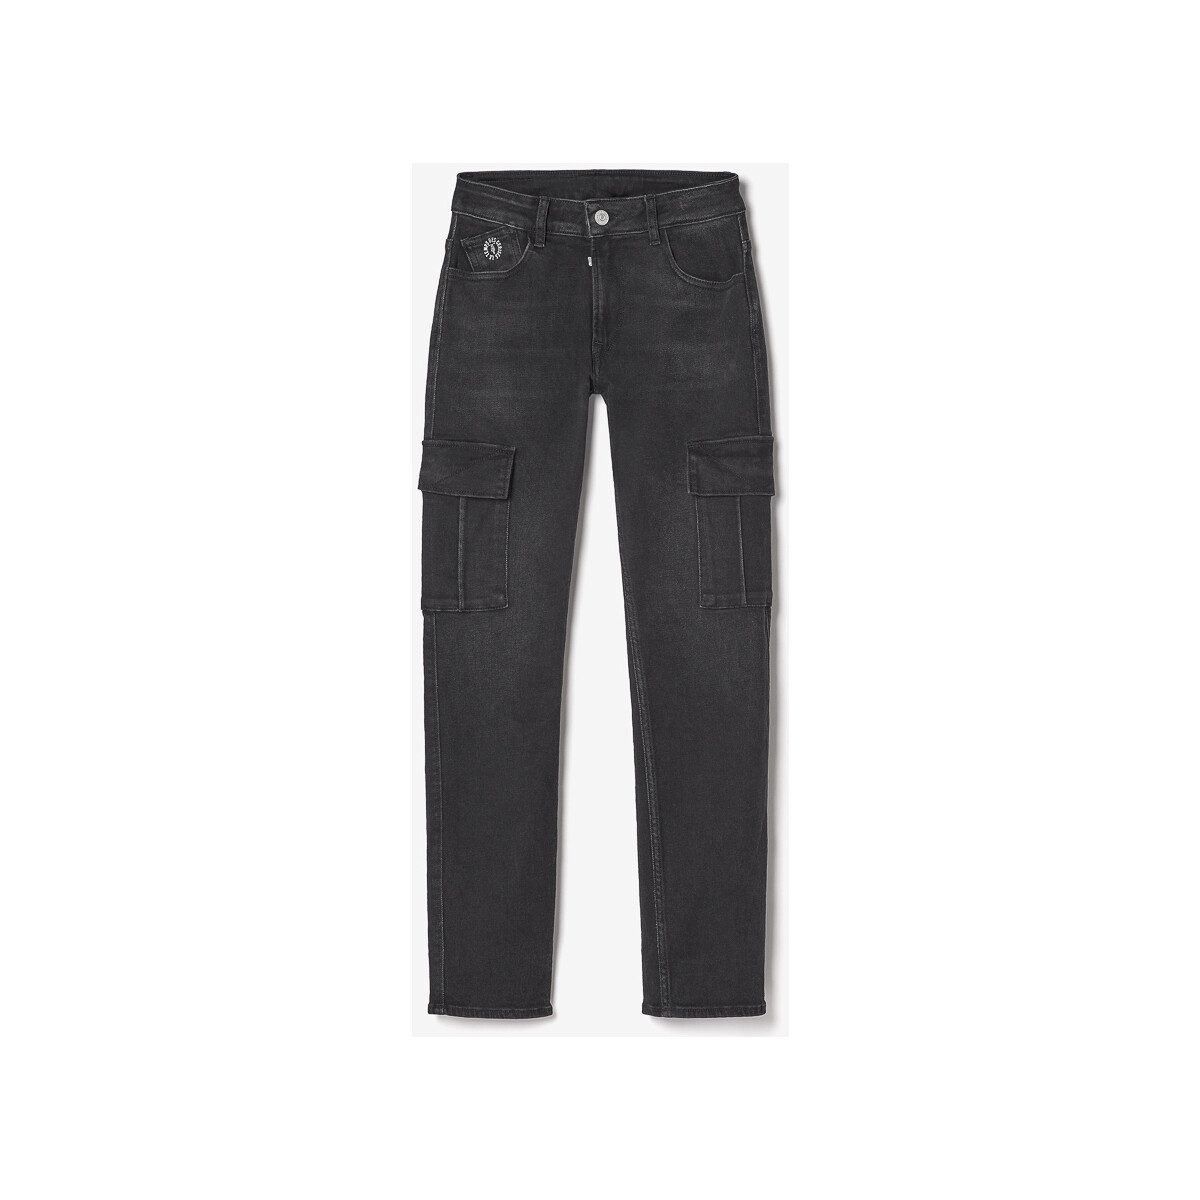 Textil Rapaz Calças de ganga Le Temps des Cerises Jeans regular 800/16, comprimento 34 Preto